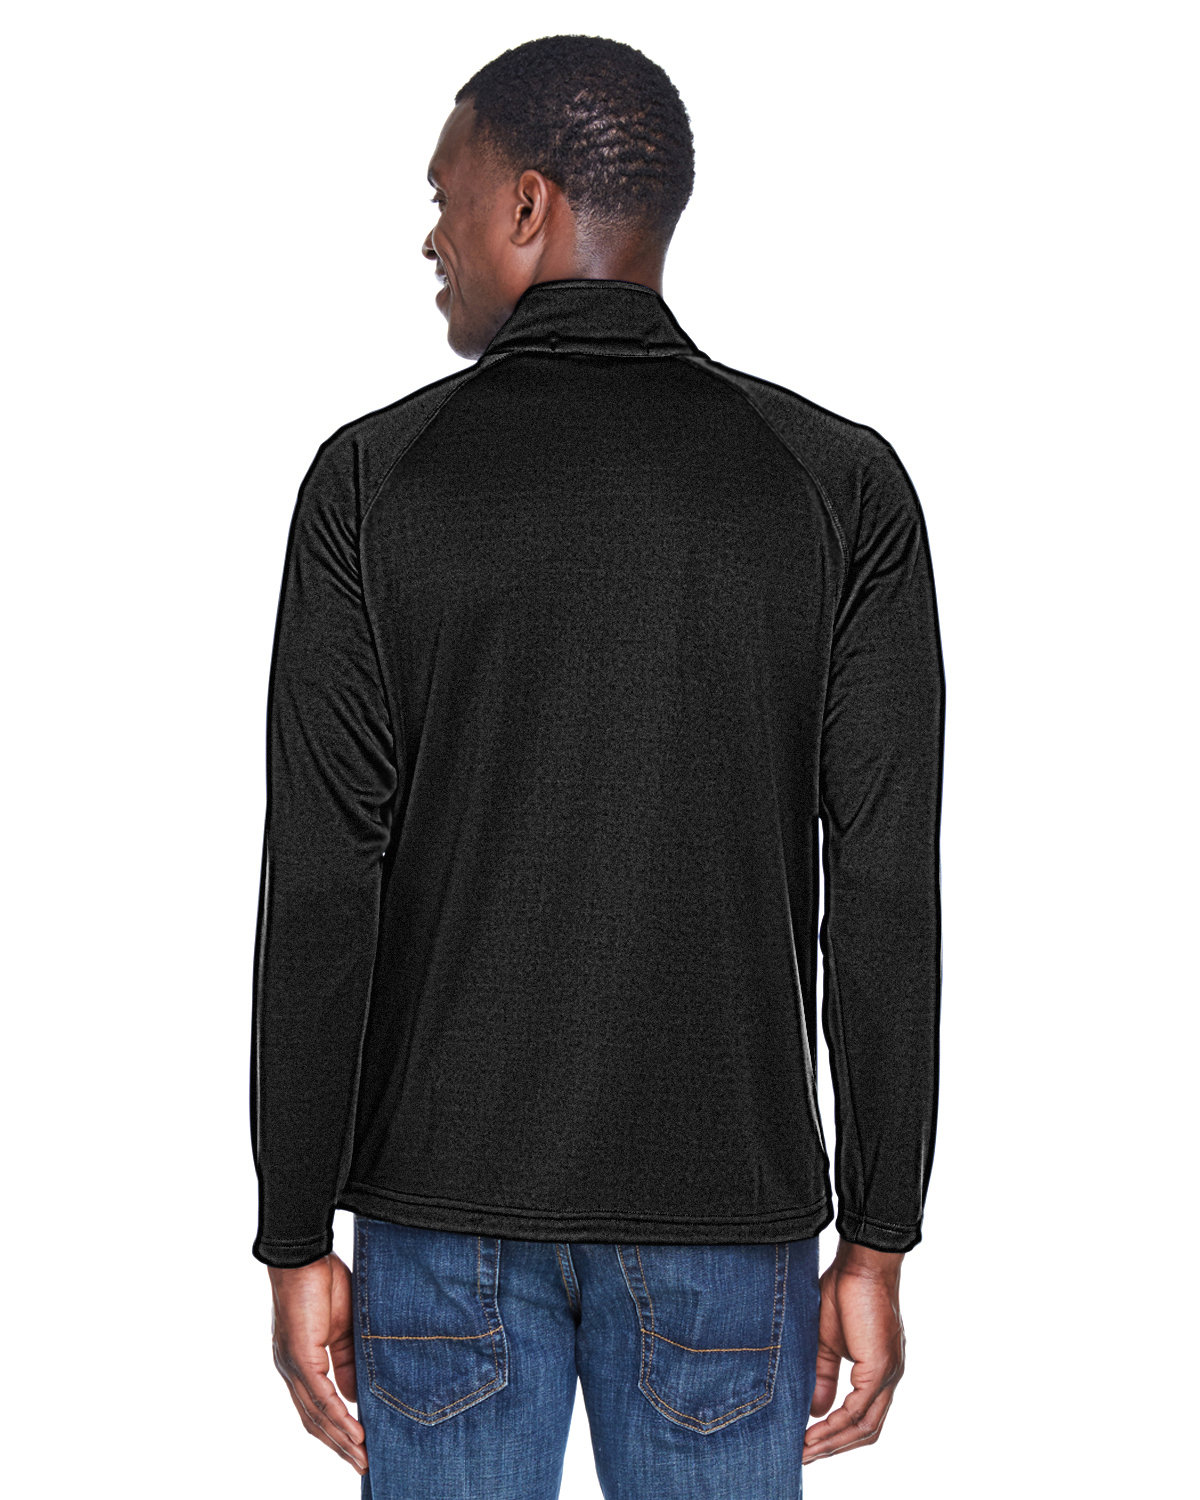 DSG Outerwear D-Tech 1/4 Zip Base Layer Shirt 2.0, Black/Stone, 3XL 